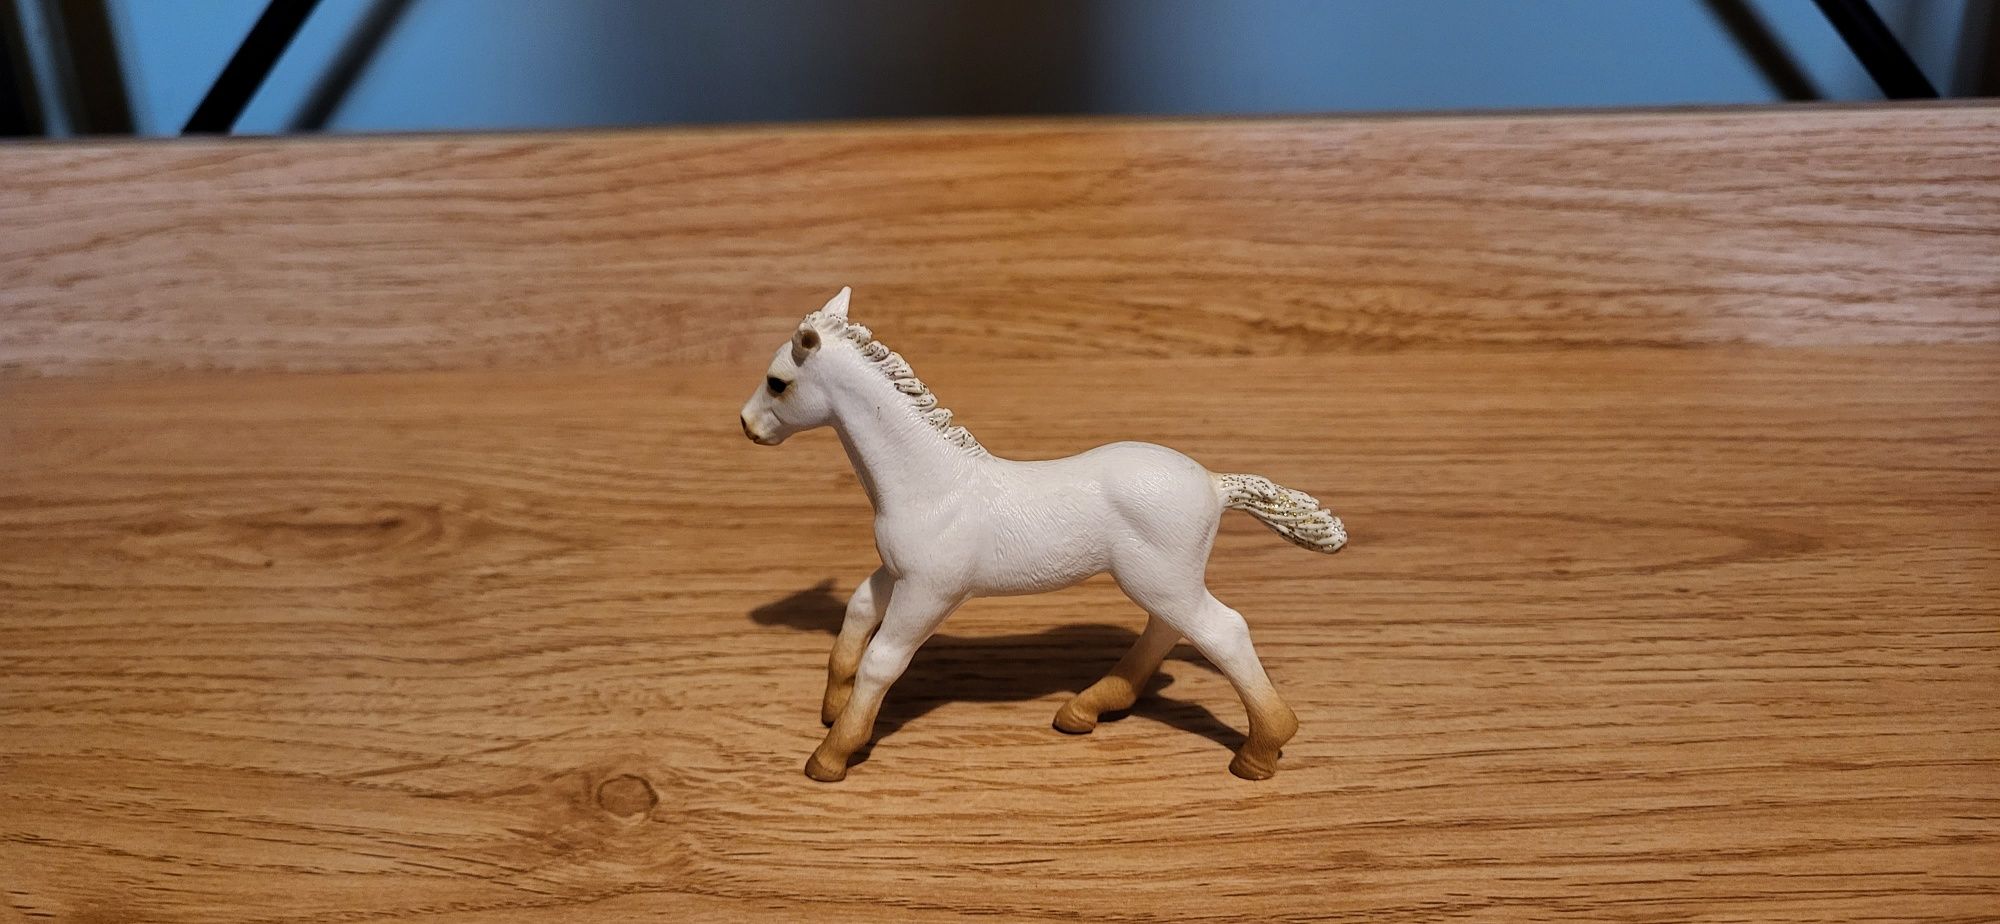 Schleich bayala magiczny koń Linnea figurki edycja limitowana 2011